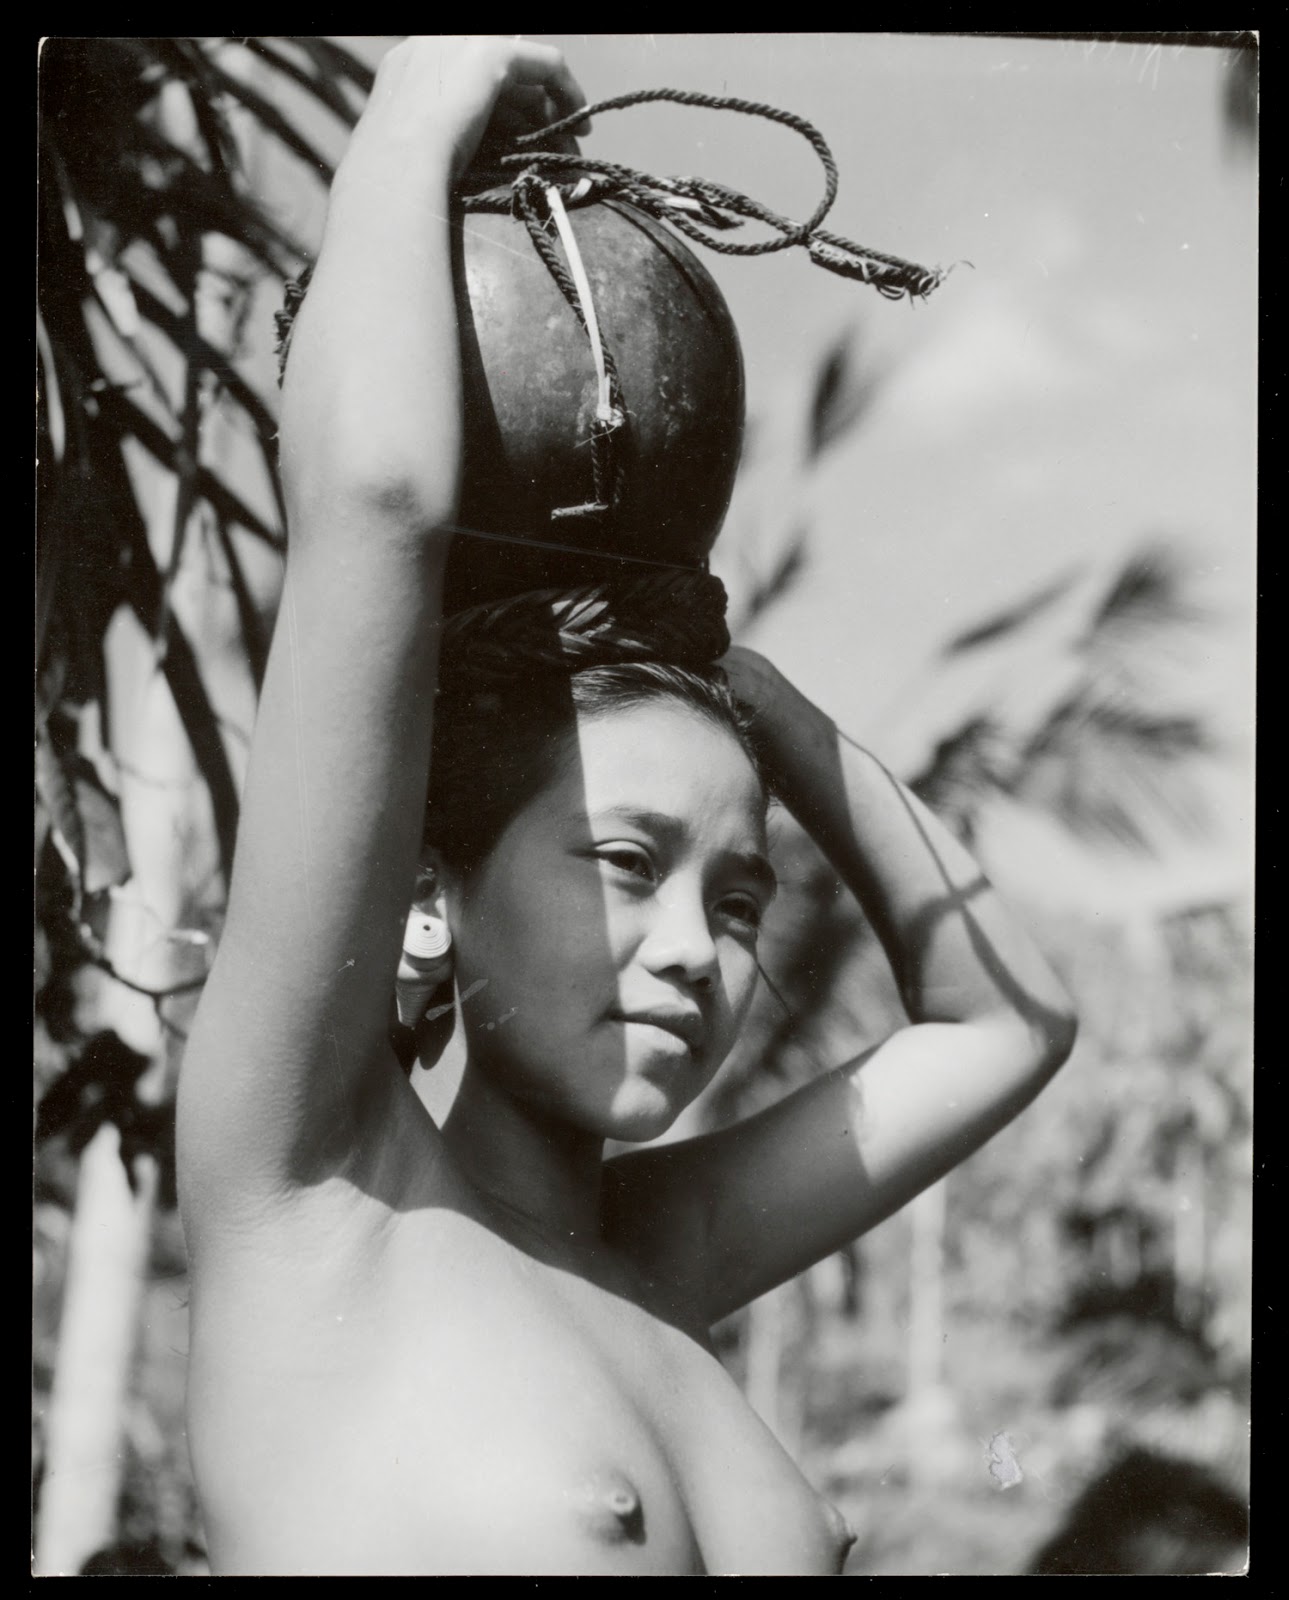 kumpulan-foto-gadis-bali-tempoe-doeloe-telanjang-dada-tahun-1910-1930-balinese-topless-girls-vintage-photography-16